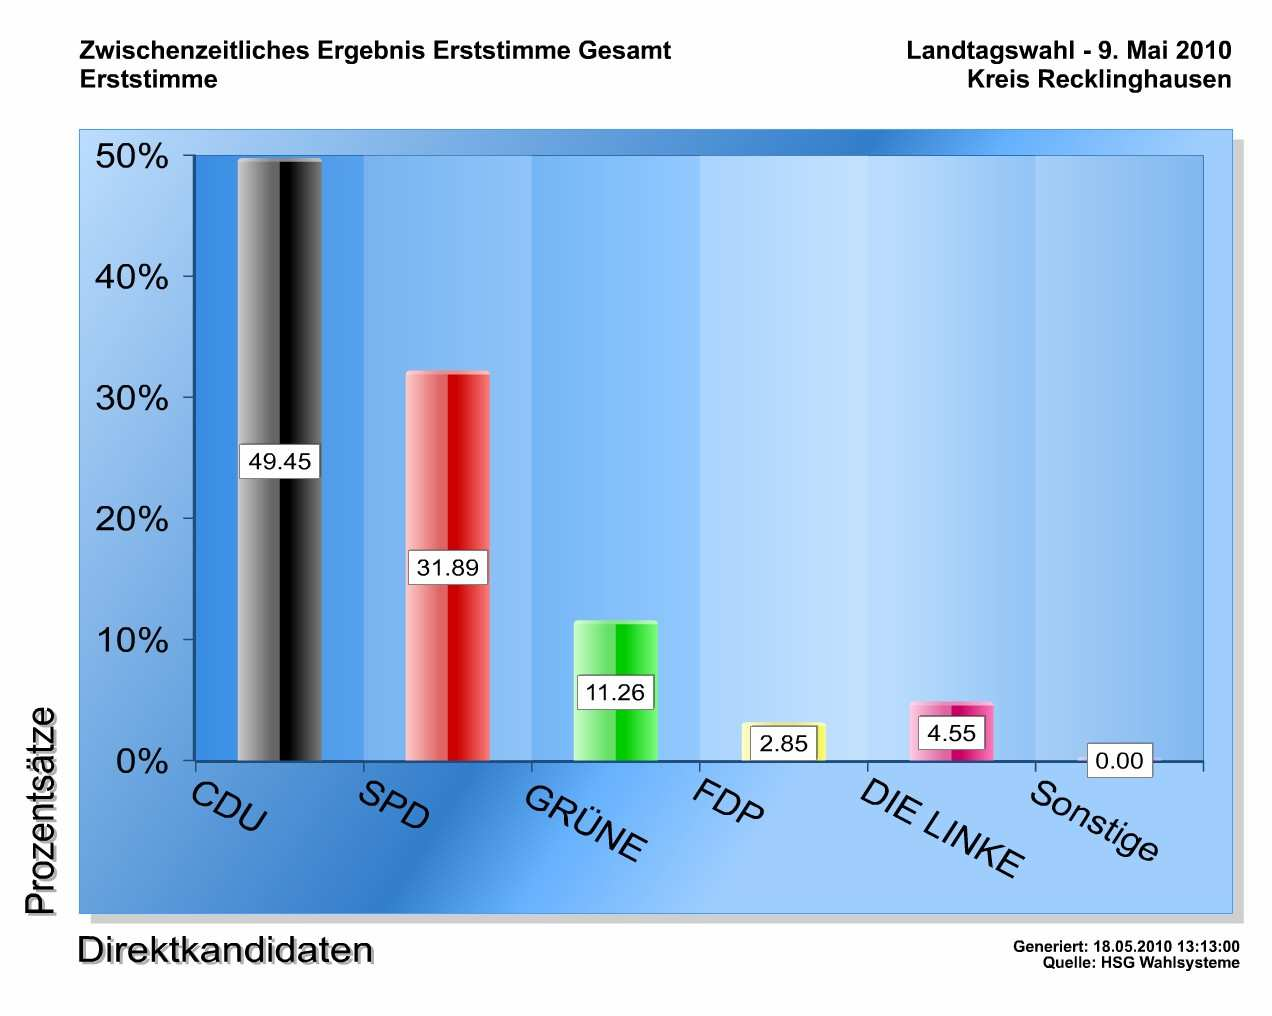 Stadt Haltern am See - Erststimmen Stimmen Prozentsätze 2010 2010 CDU 10111 49,45% SPD 6519 31,89% GRÜNE 2302 11,26% FDP 582 2,85% LINKE 931 4,55% Anzahl der gültigen